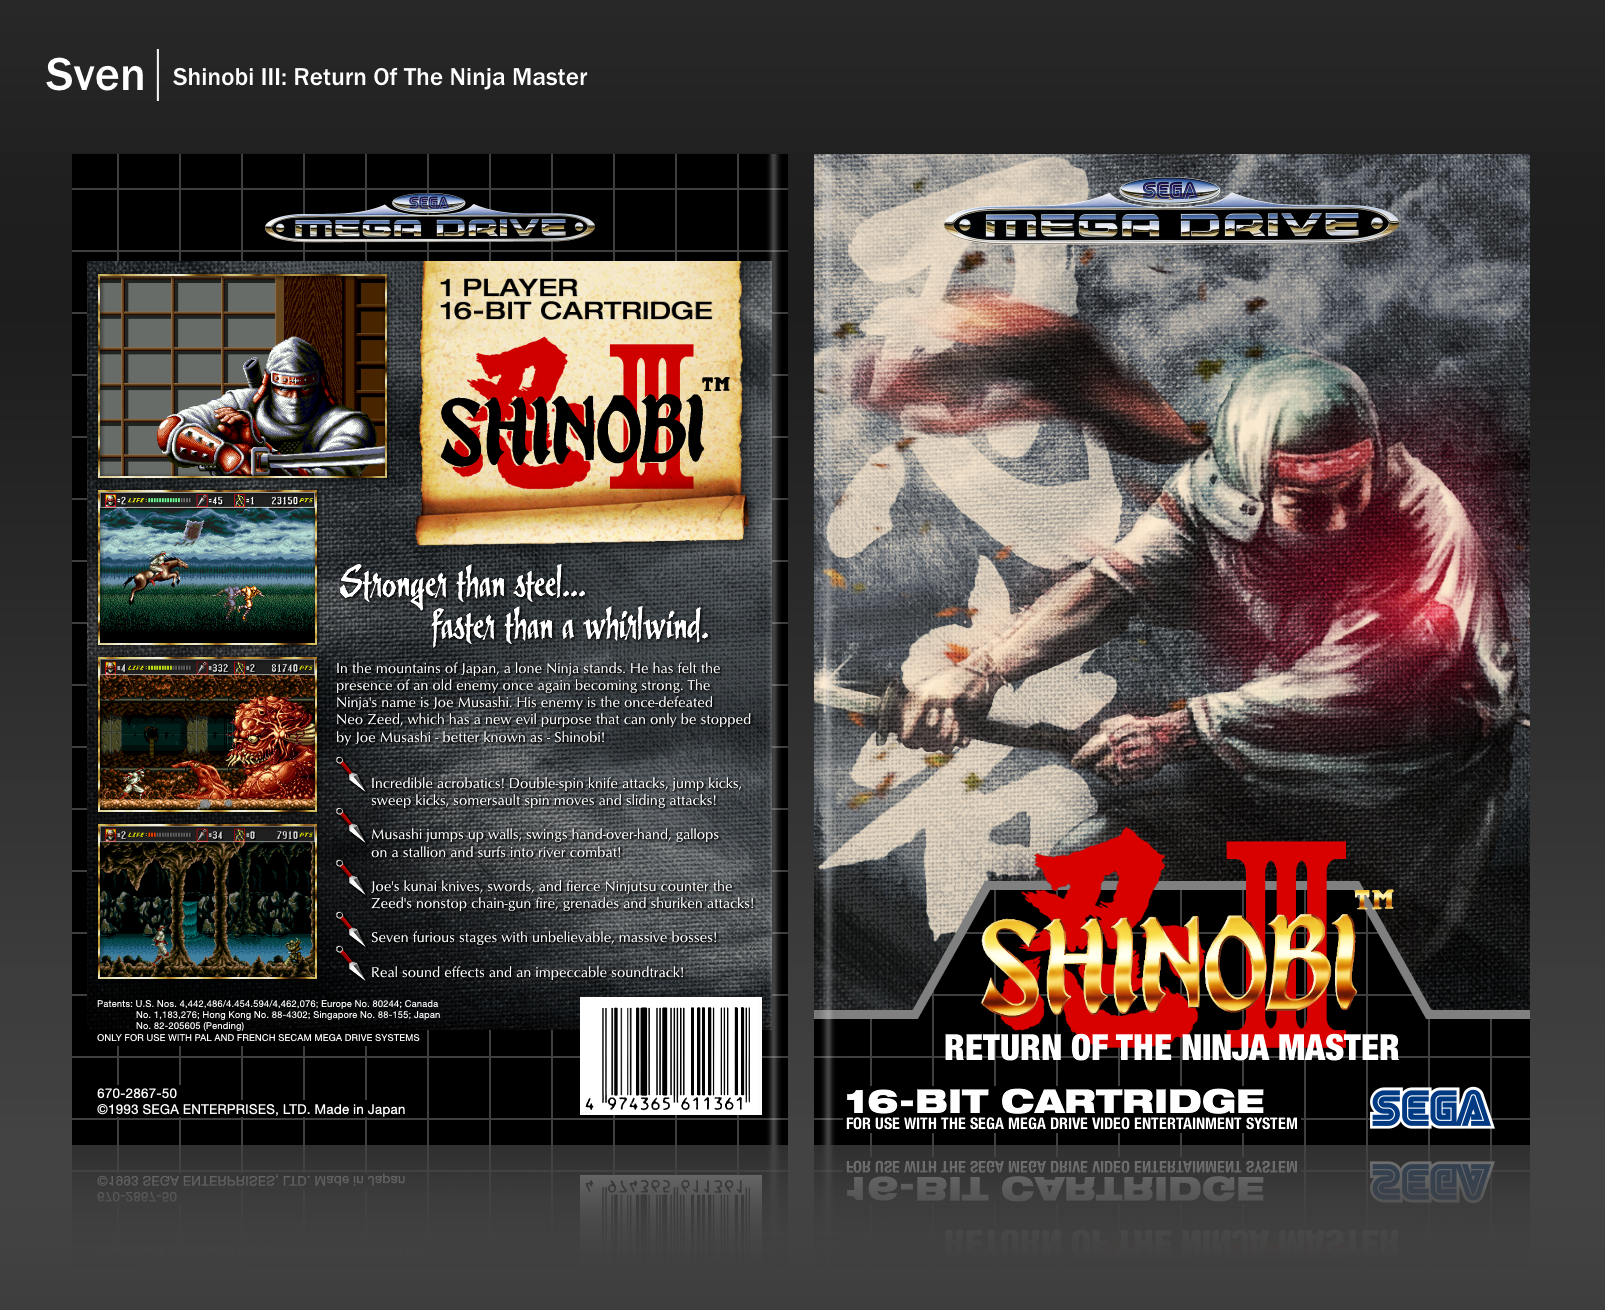 Shinobi III: Return of the Ninja Master box cover